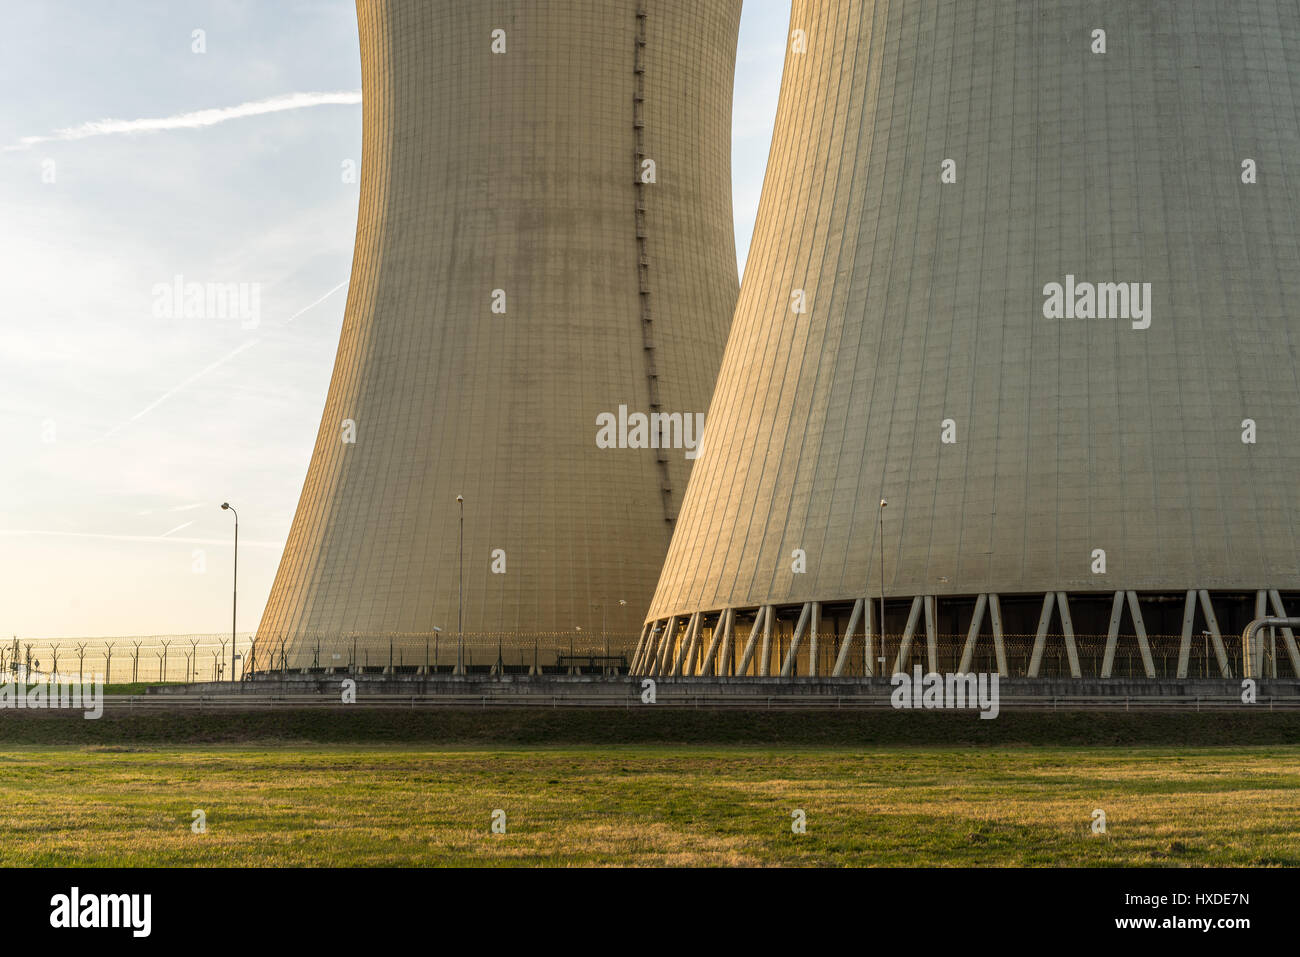 Detalle de las torres de refrigeración de las centrales nucleares. Foto de stock